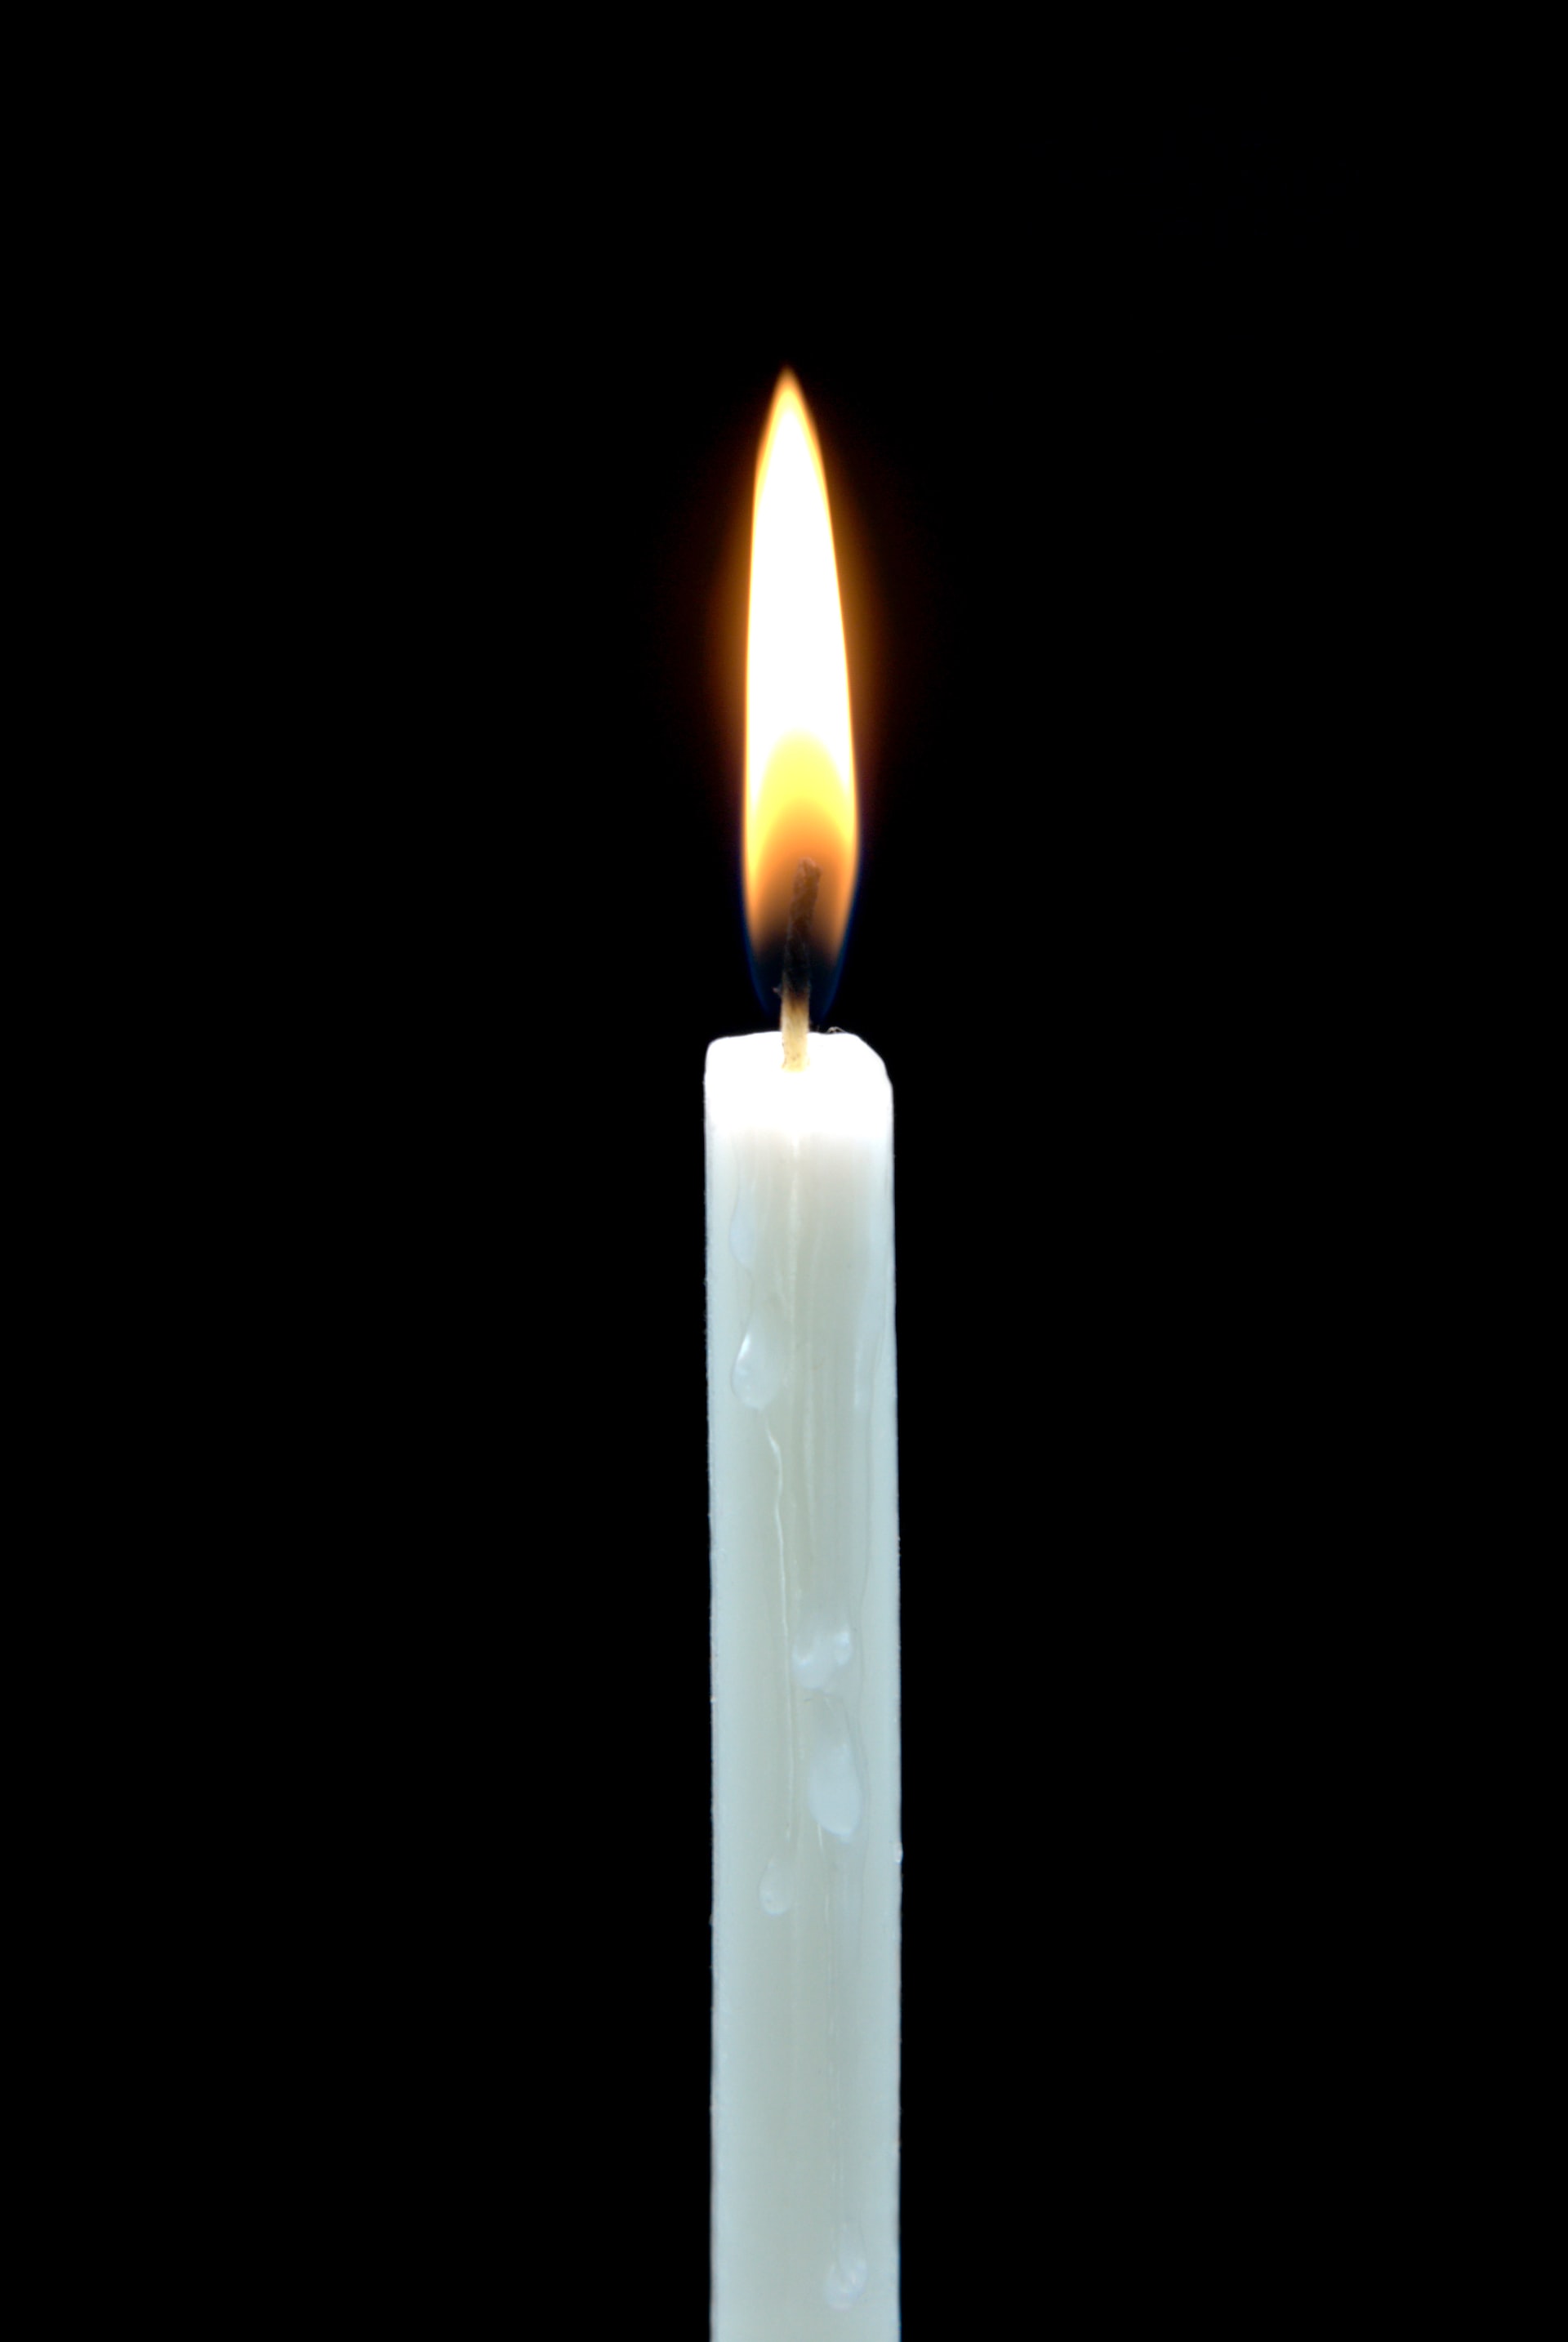 Зажжённая на прощёное воскресенье свеча стала причиной пожара в жилом доме в Ижевске